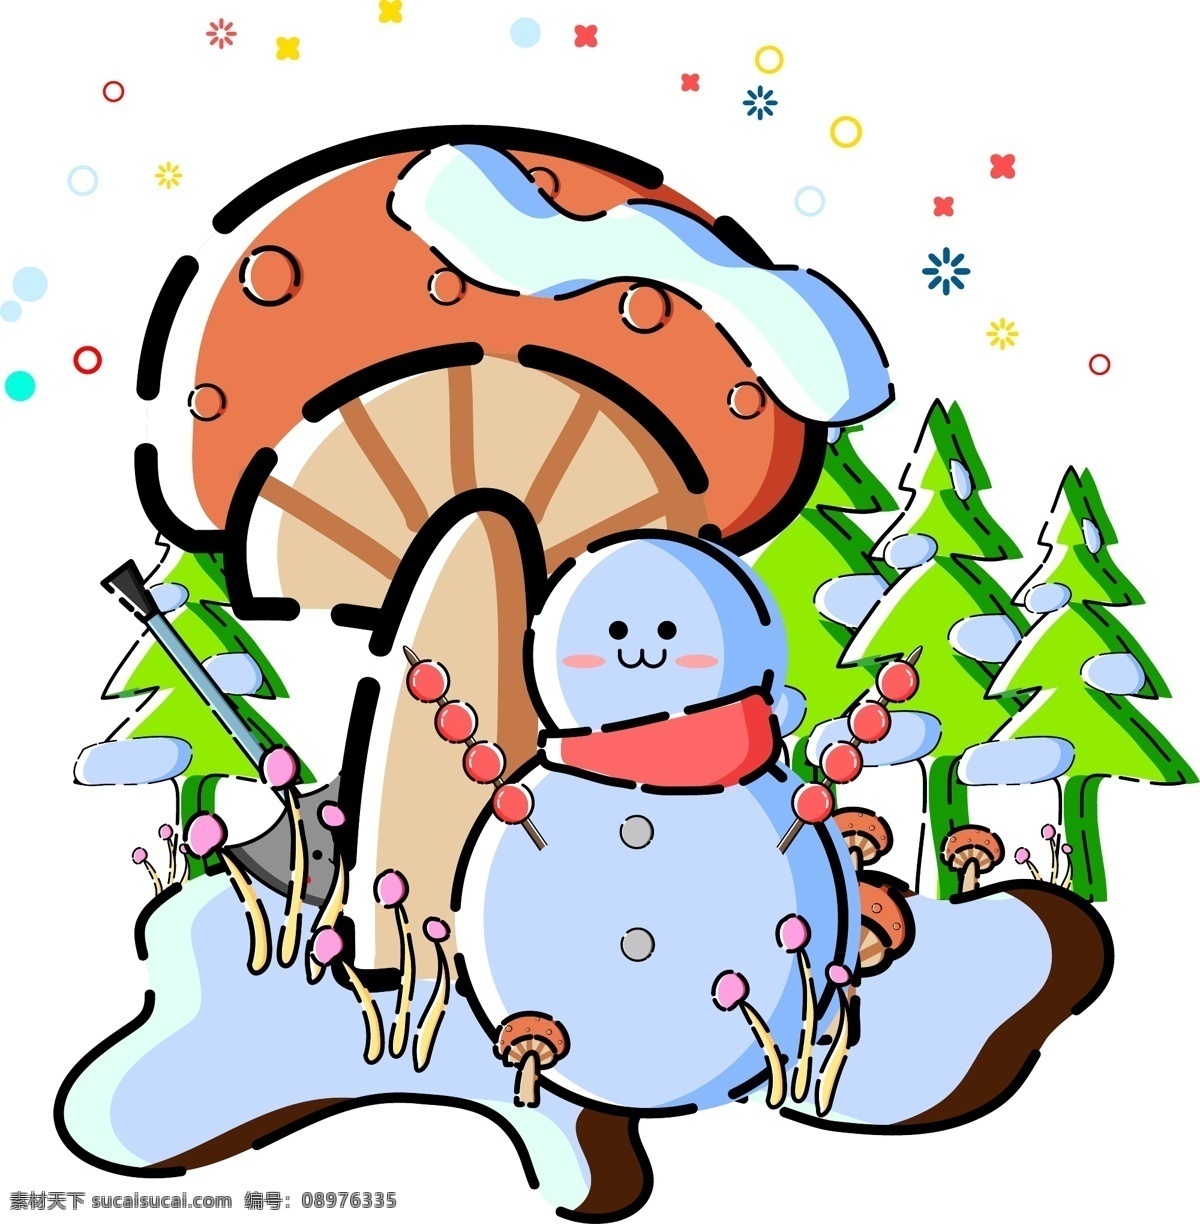 商用 矢量 mbe 风格 冬季 场景 元素 雪人 蘑菇 海报素材 mbe风格 冬季场景 雪树